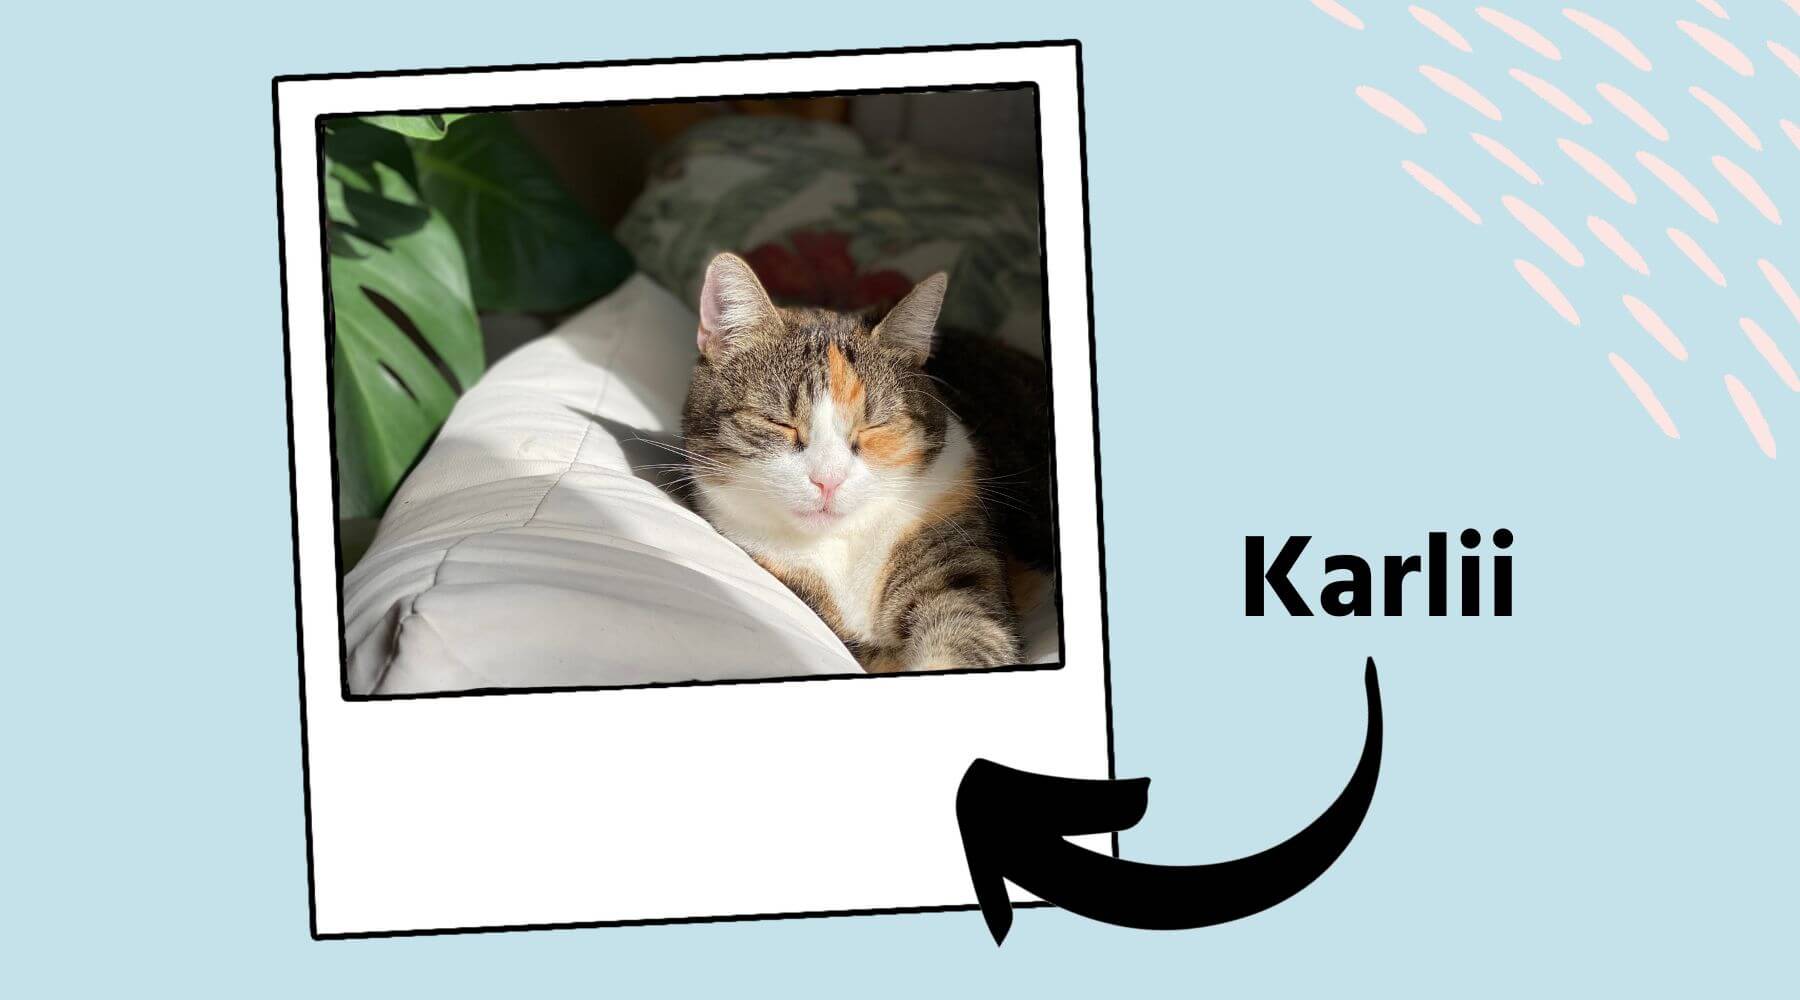 Katze Karlii liegt auf dem Sofa und liegt in der Sonne.